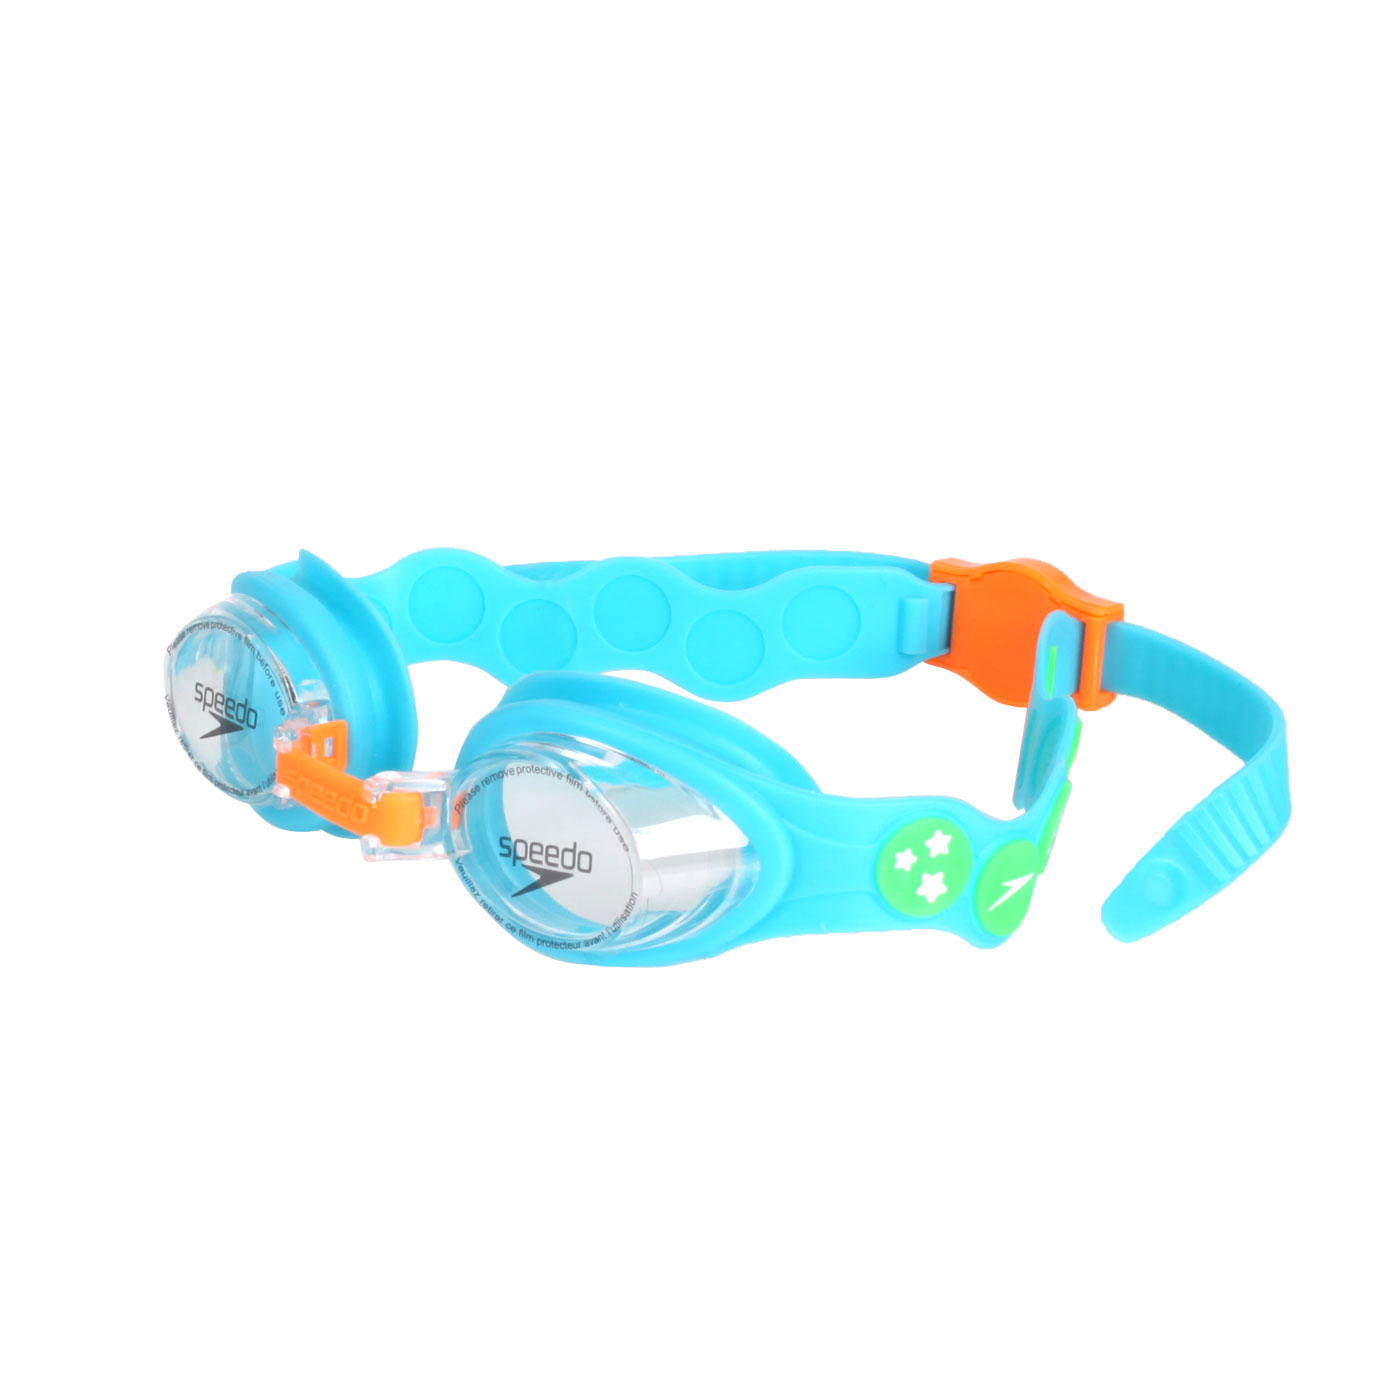 SPEEDO 幼童運動泳鏡 Spot  SD80838214641 - 水藍橘綠白